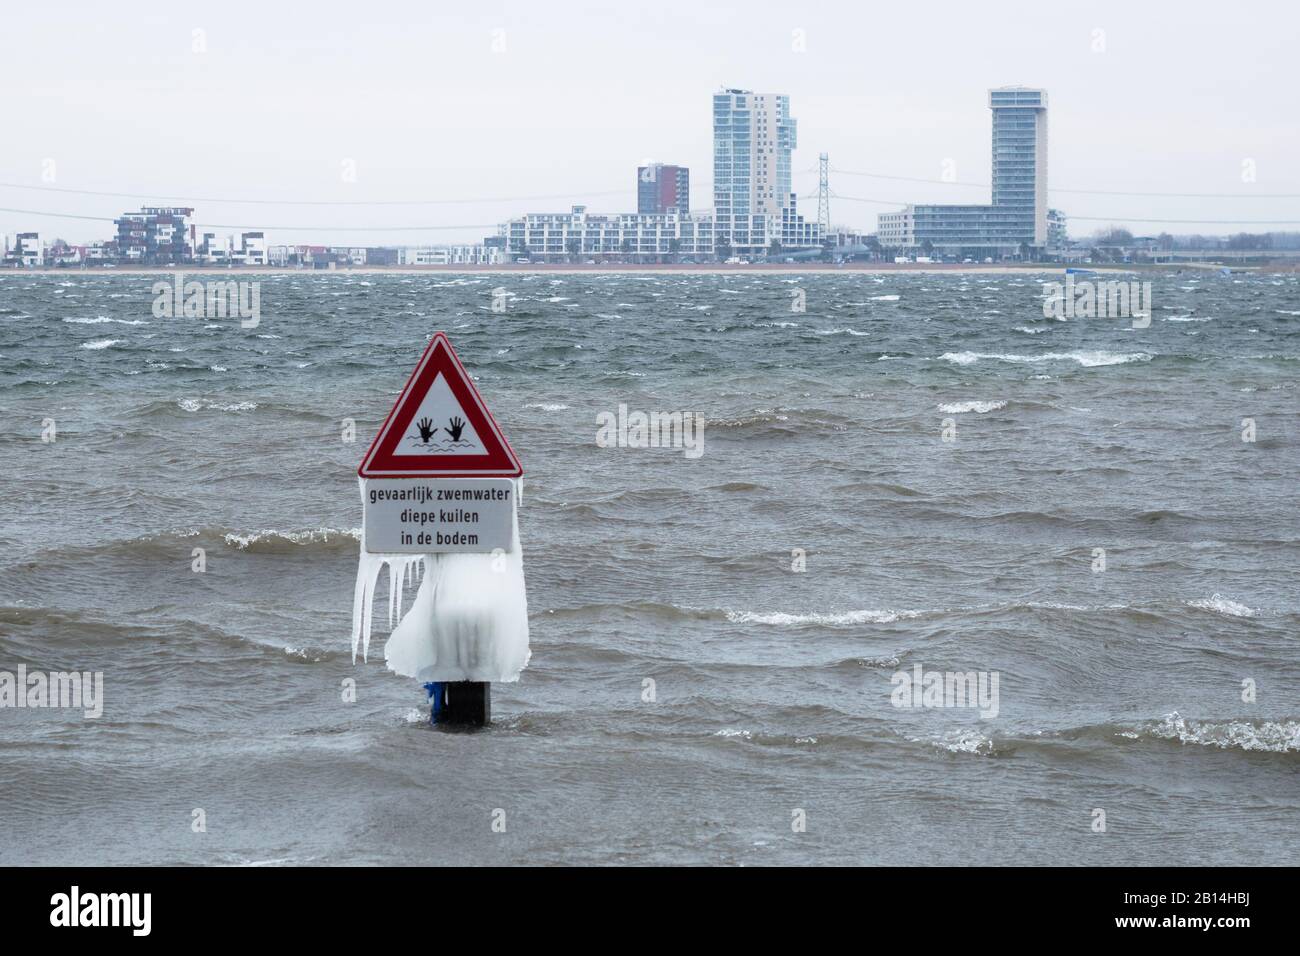 Icicles sur un panneau d'avertissement dans un lac pendant un sort très froid en fin d'hiver. Le texte néerlandais signifie « l'eau de baignade, les fosses profondes au fond ». Banque D'Images